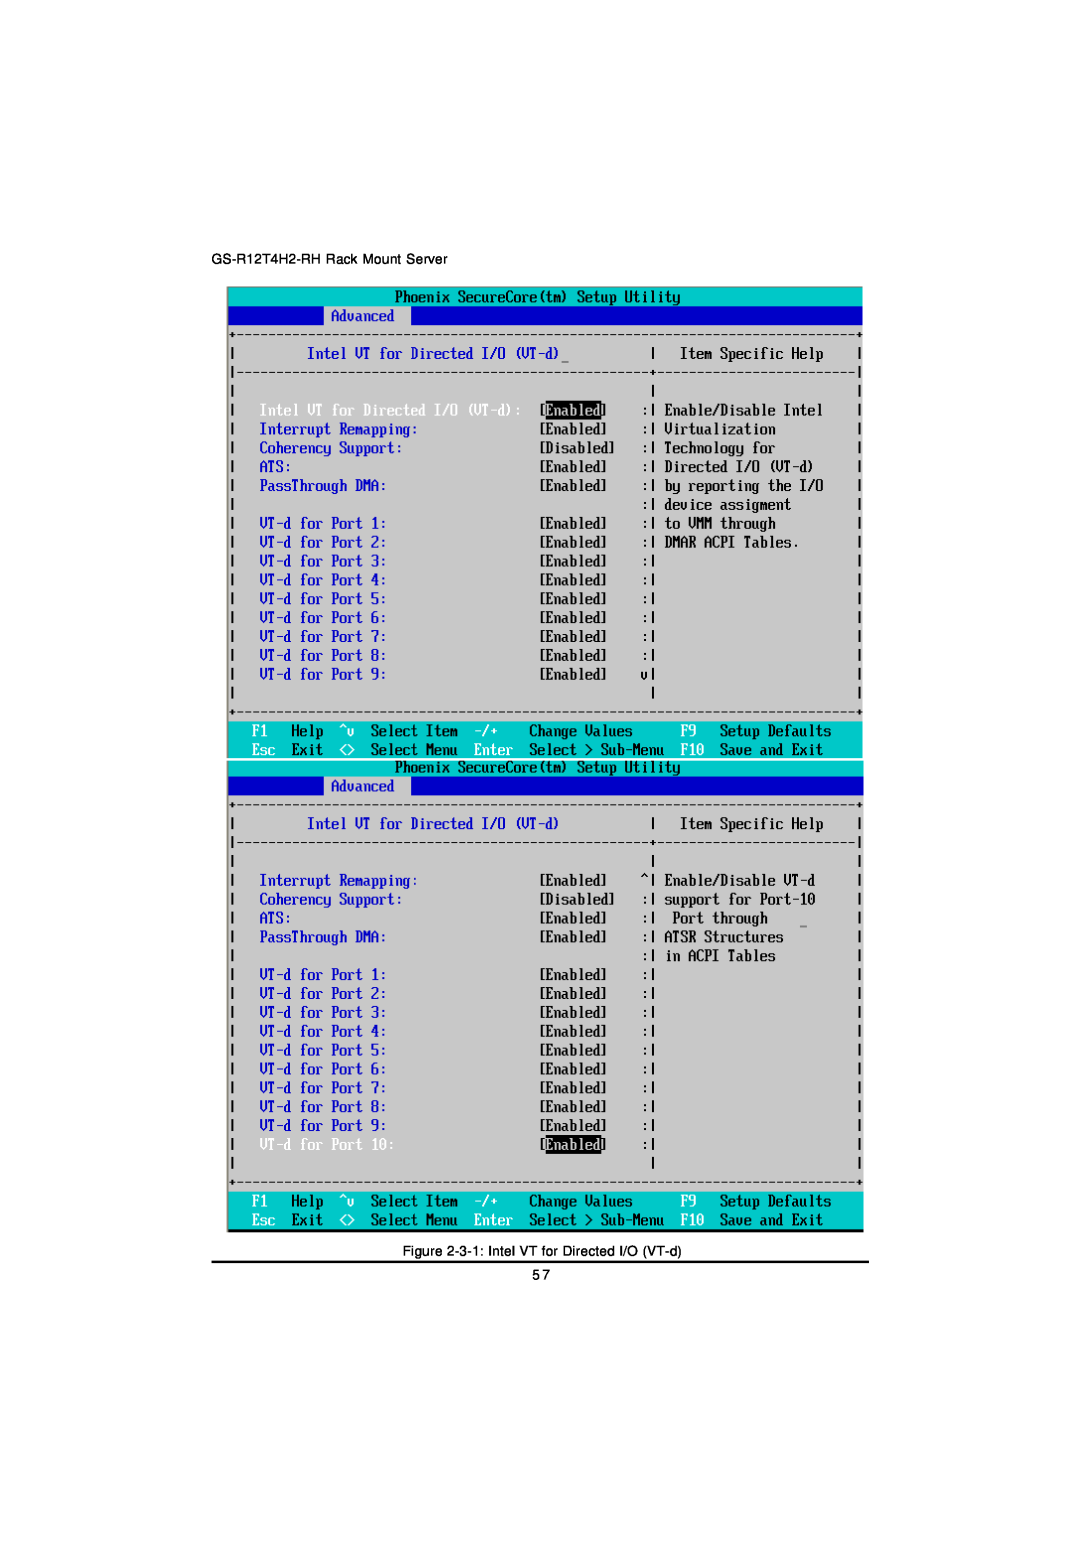 Gigabyte manual GS-R12T4H2-RH Rack Mount Server, 3-1 Intel VT for Directed I/O VT-d 